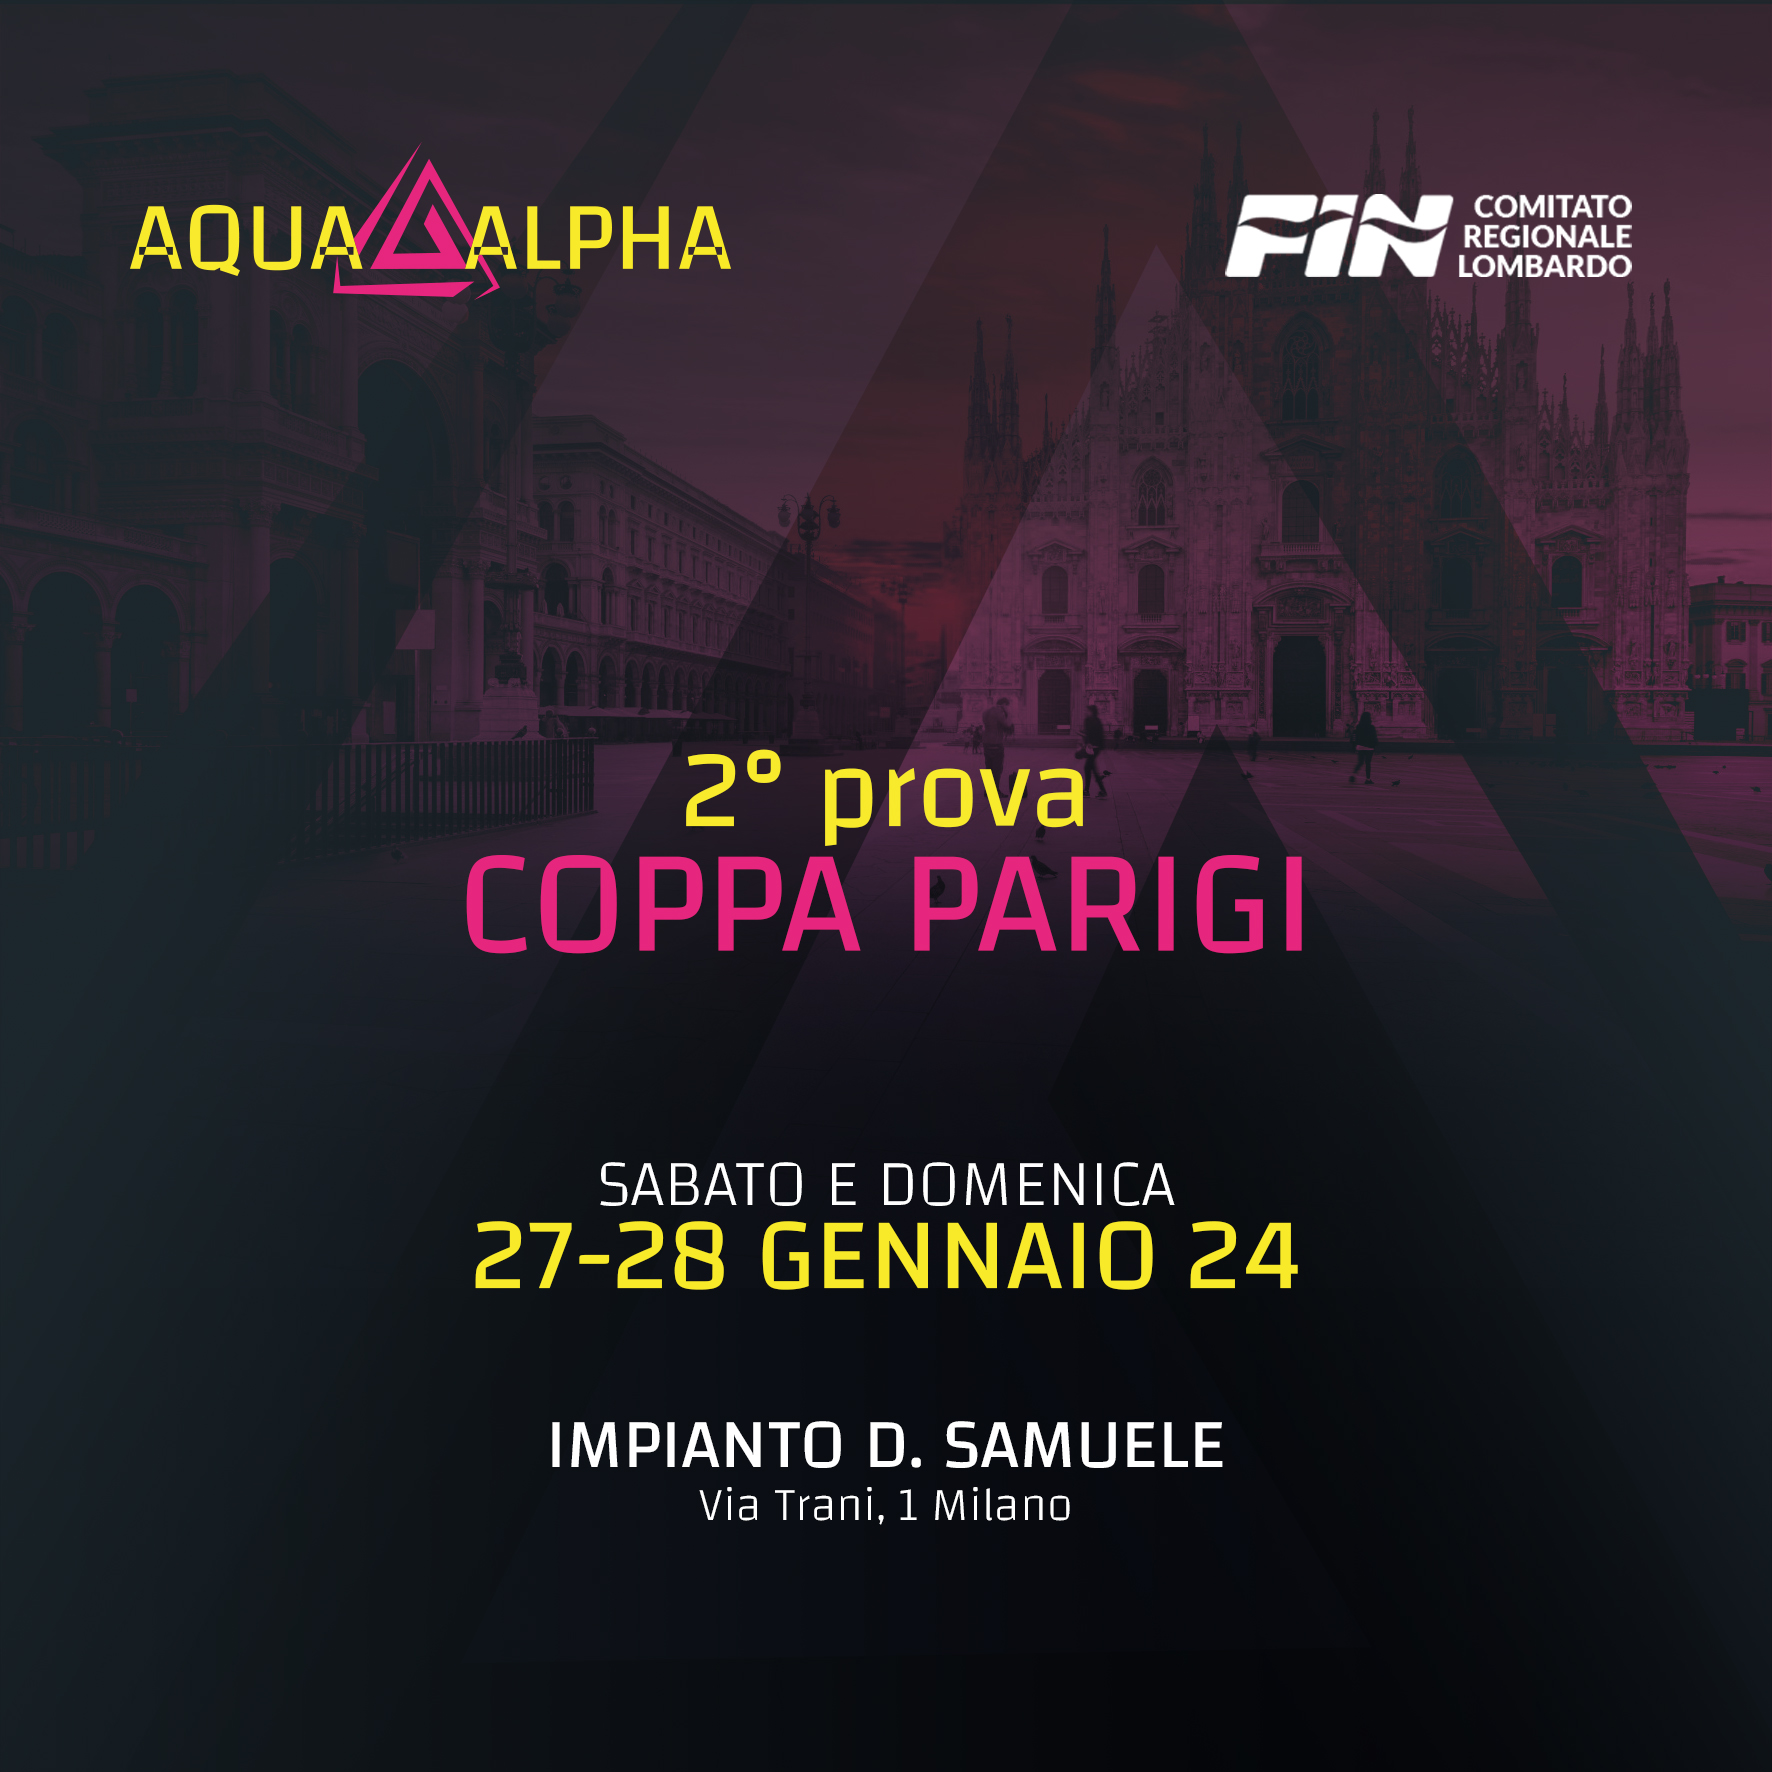 AquaAlpha_2 prova Coppa Parigi